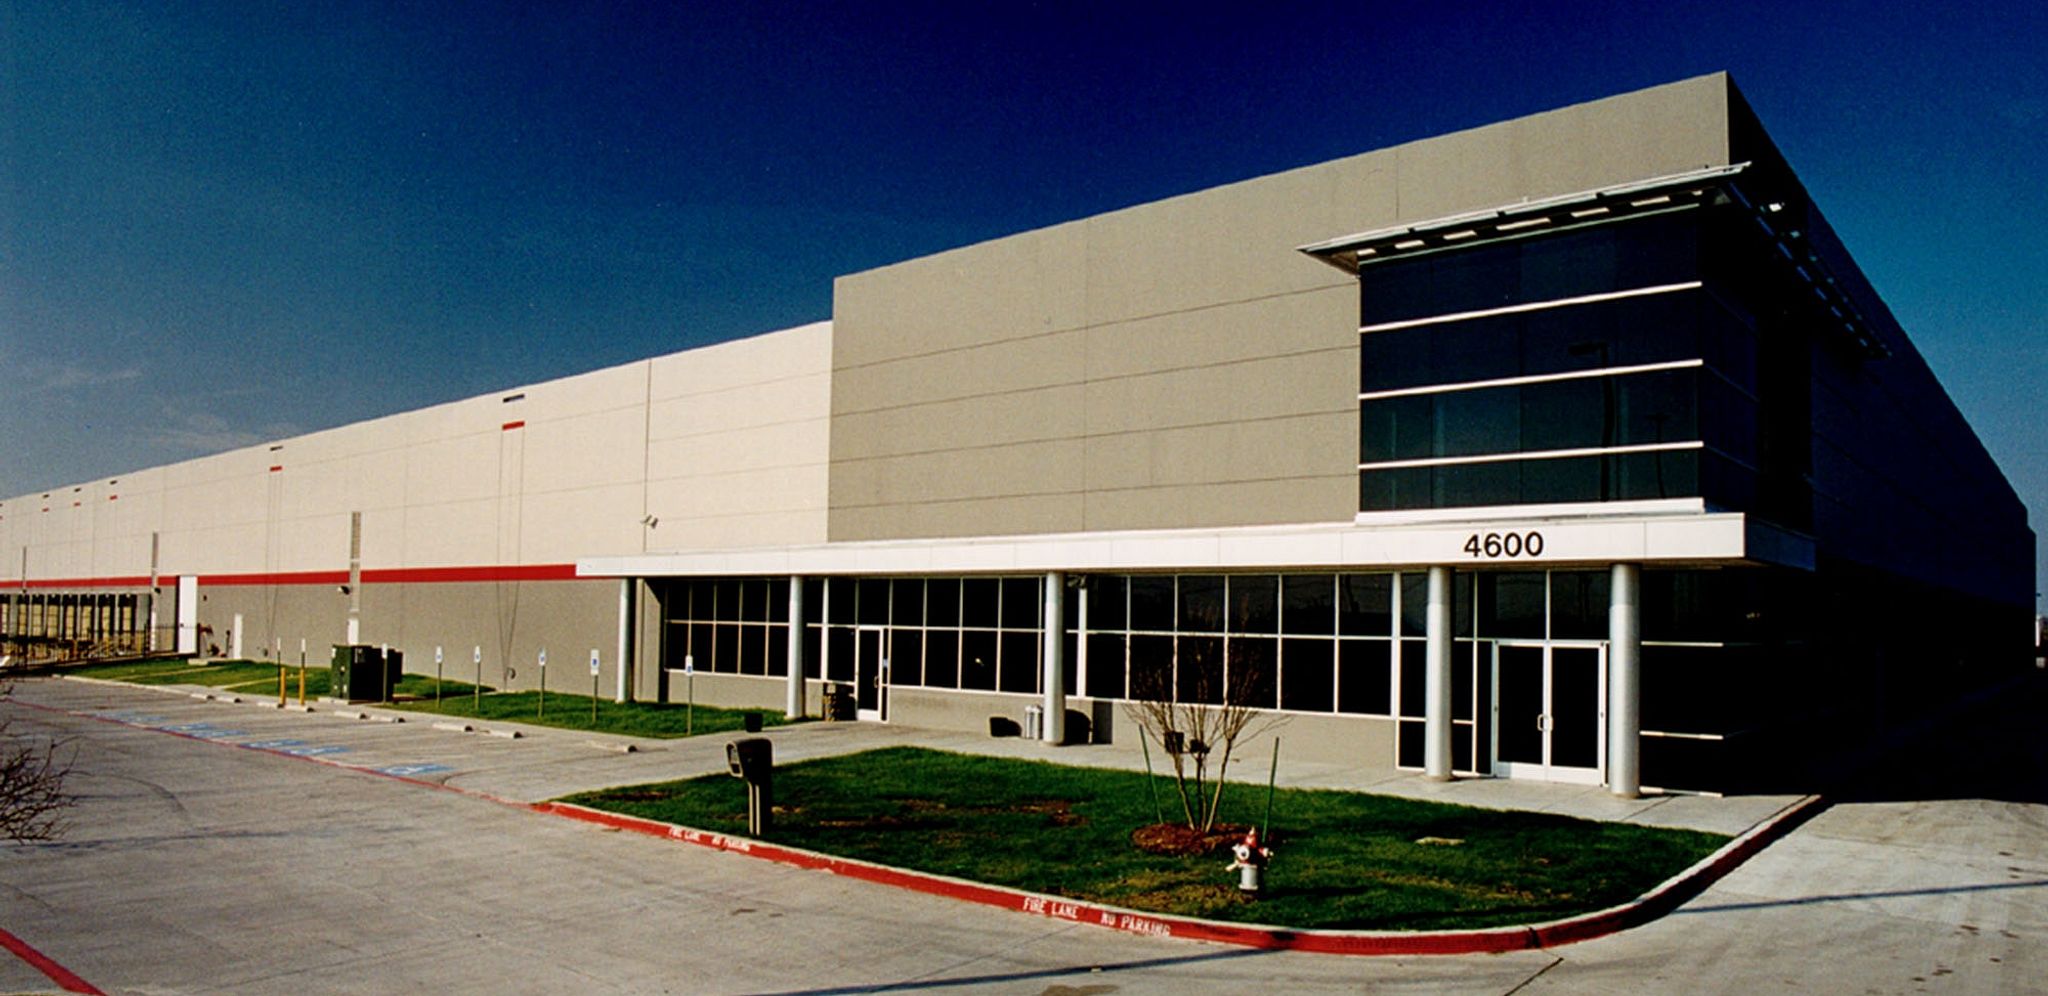 Office Depot  Arlington, Texas Warehouse Design Build Construction Example